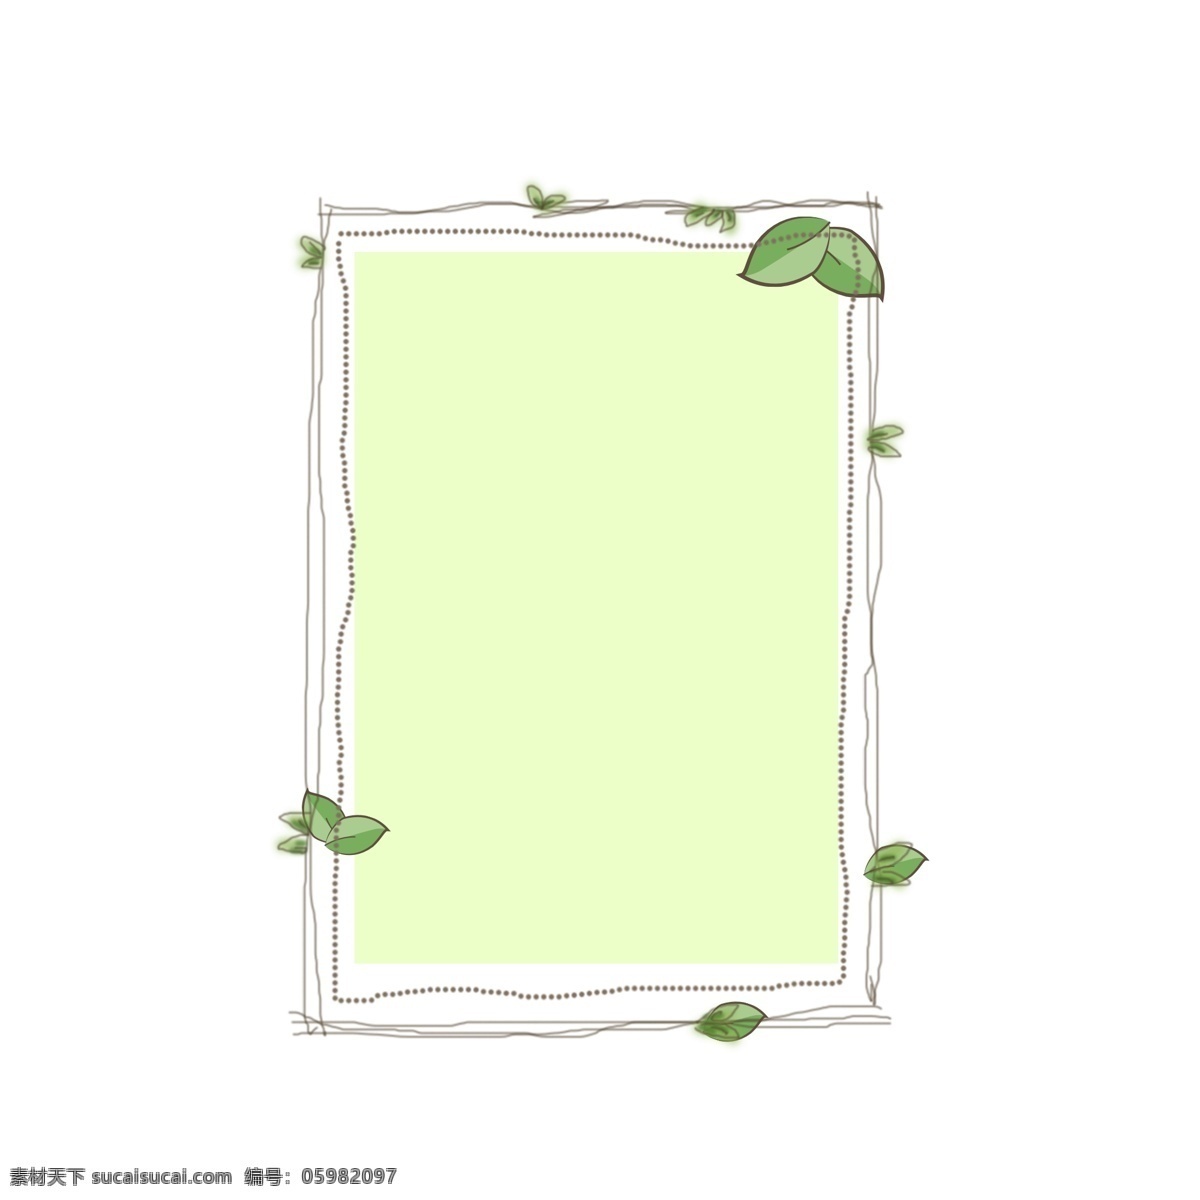 边框 植物 创意设计 元素 植物边框 手绘植物边框 唯美植物边框 矢量边框 清新 唯美 卡通植物边框